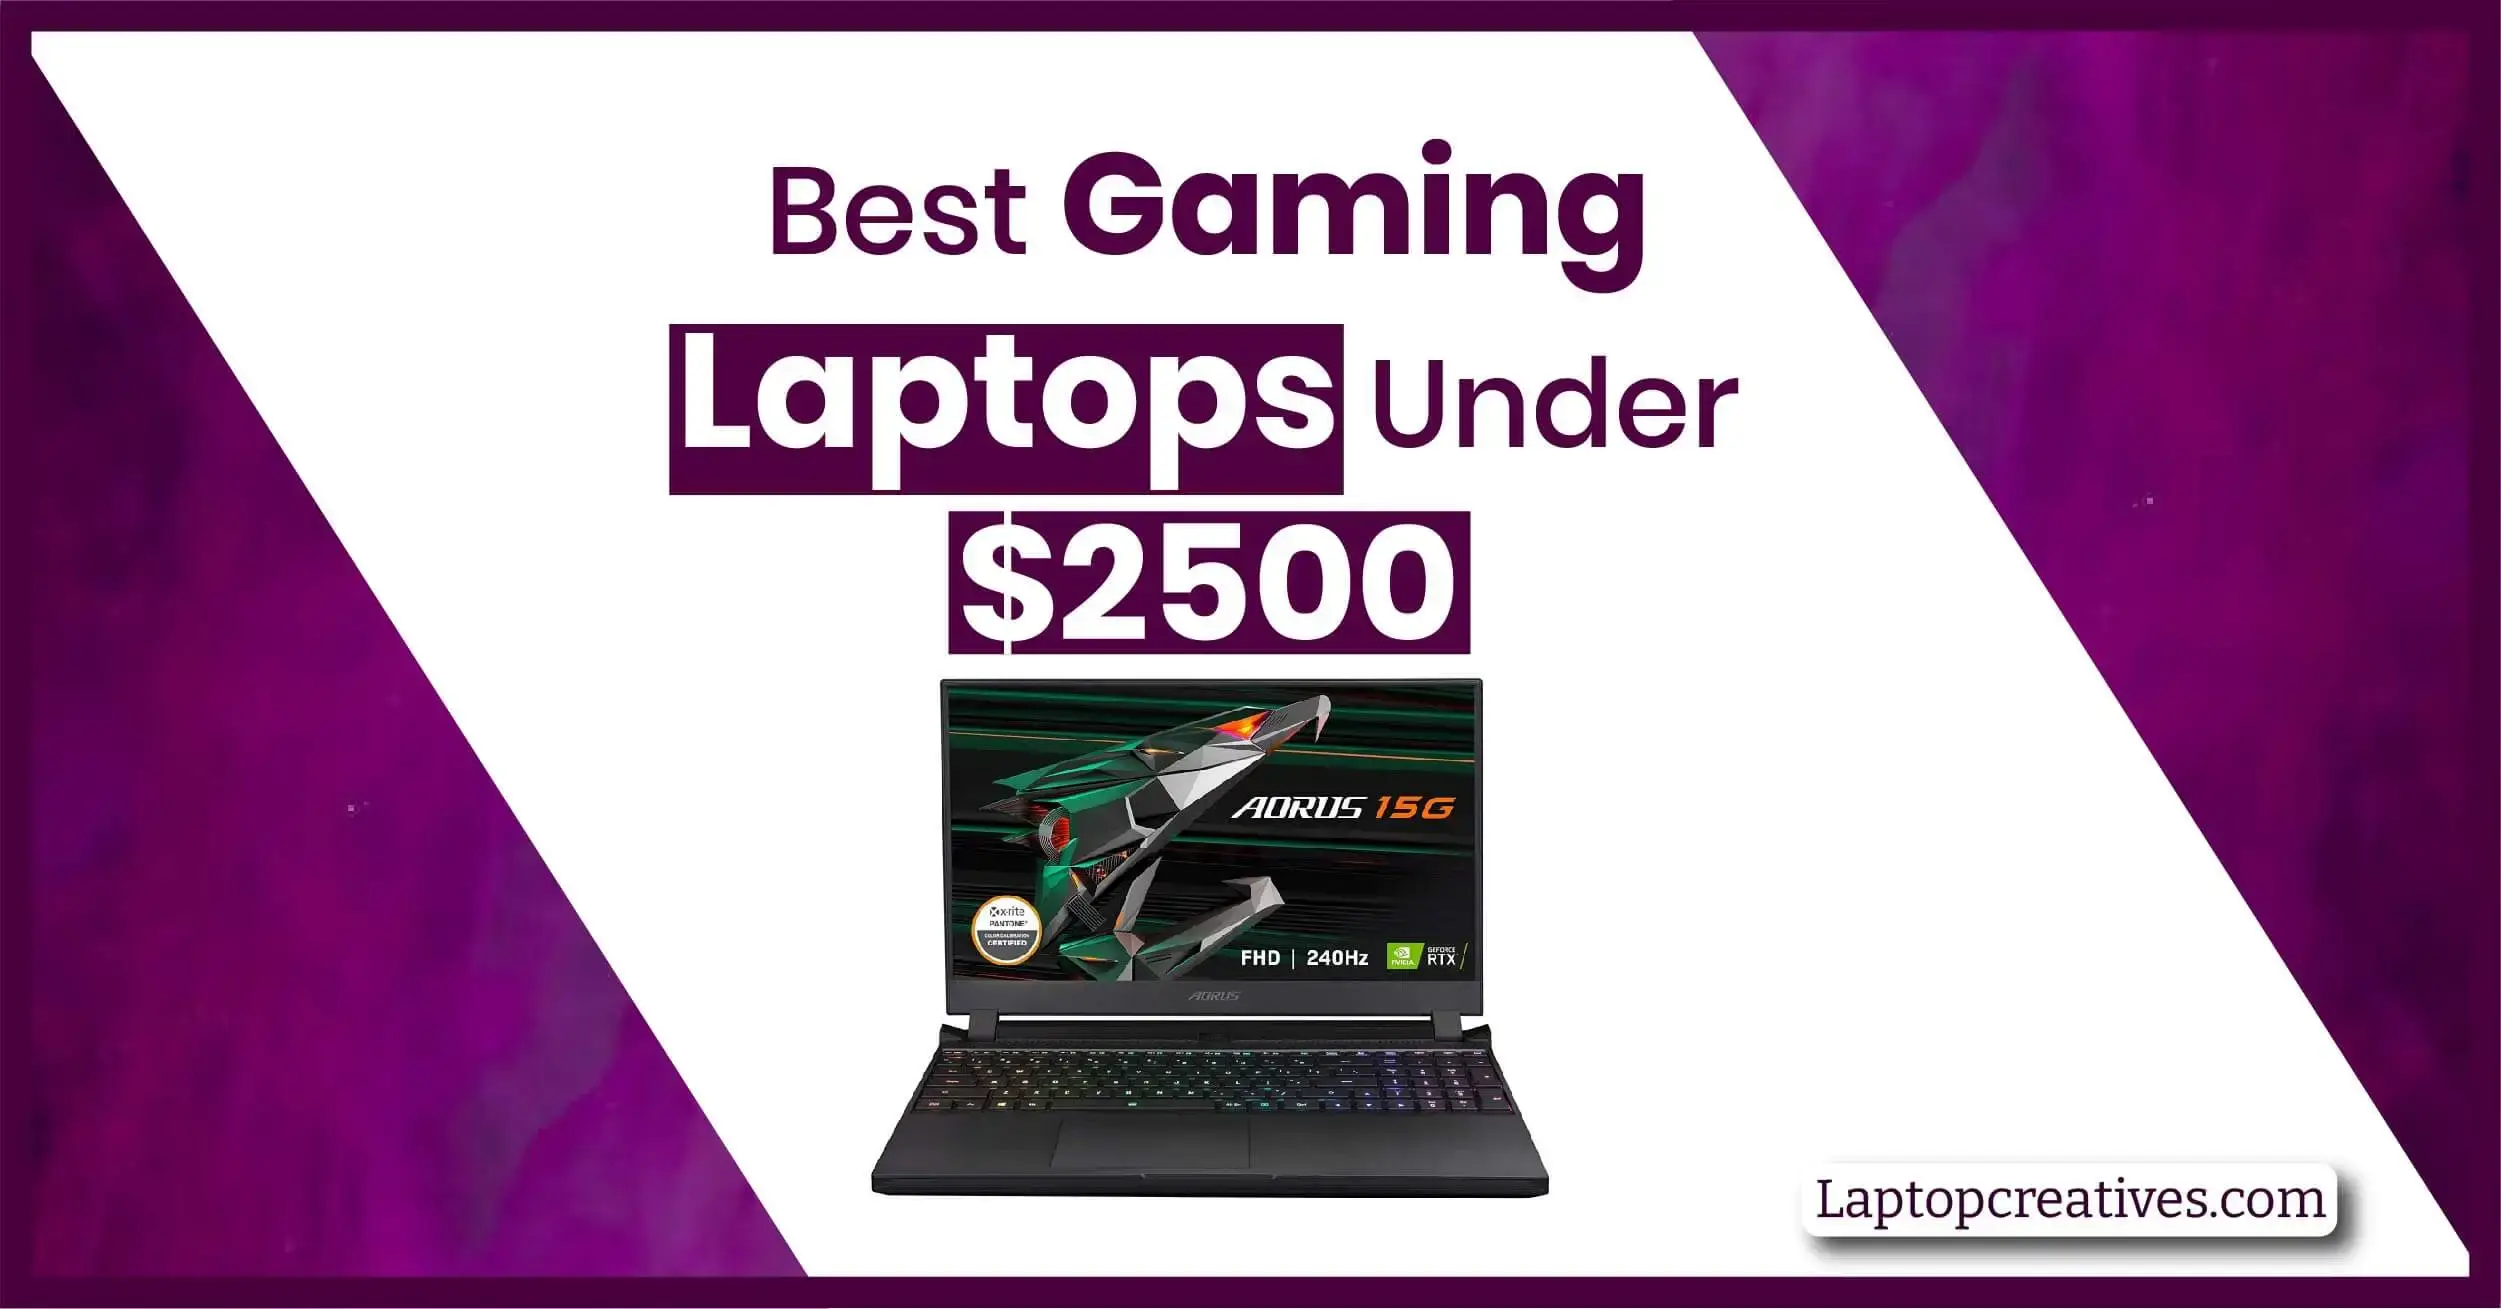 Best Gaming Laptops under $2500